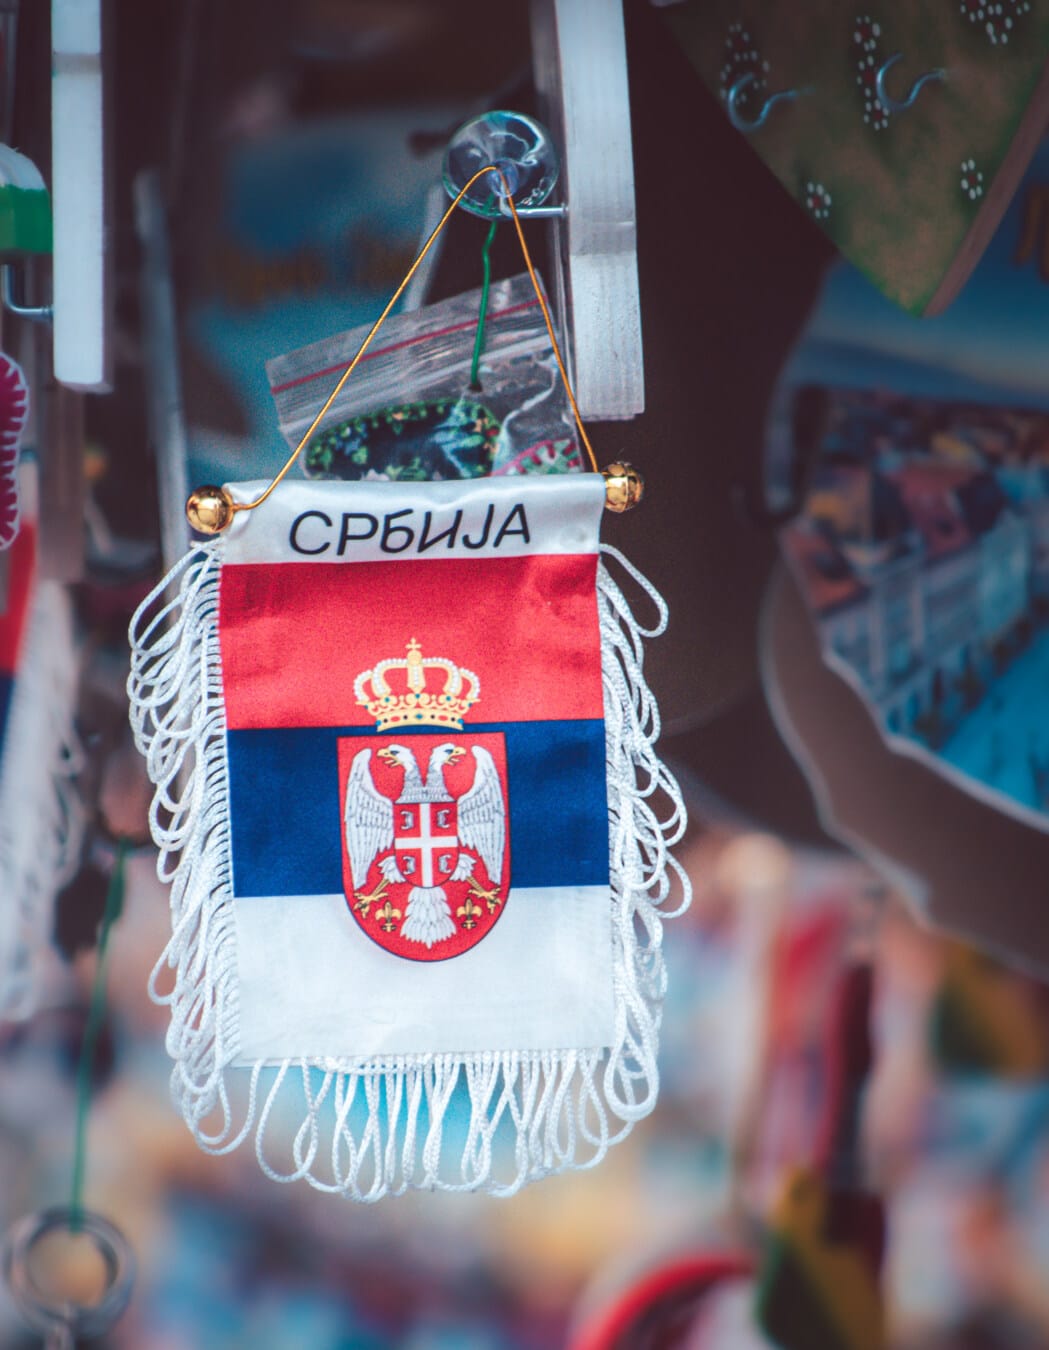 挂, 塞尔维亚, 标志, 纪念品, 怀旧, 旅游景点, 购物, 街道, 市场, 传统